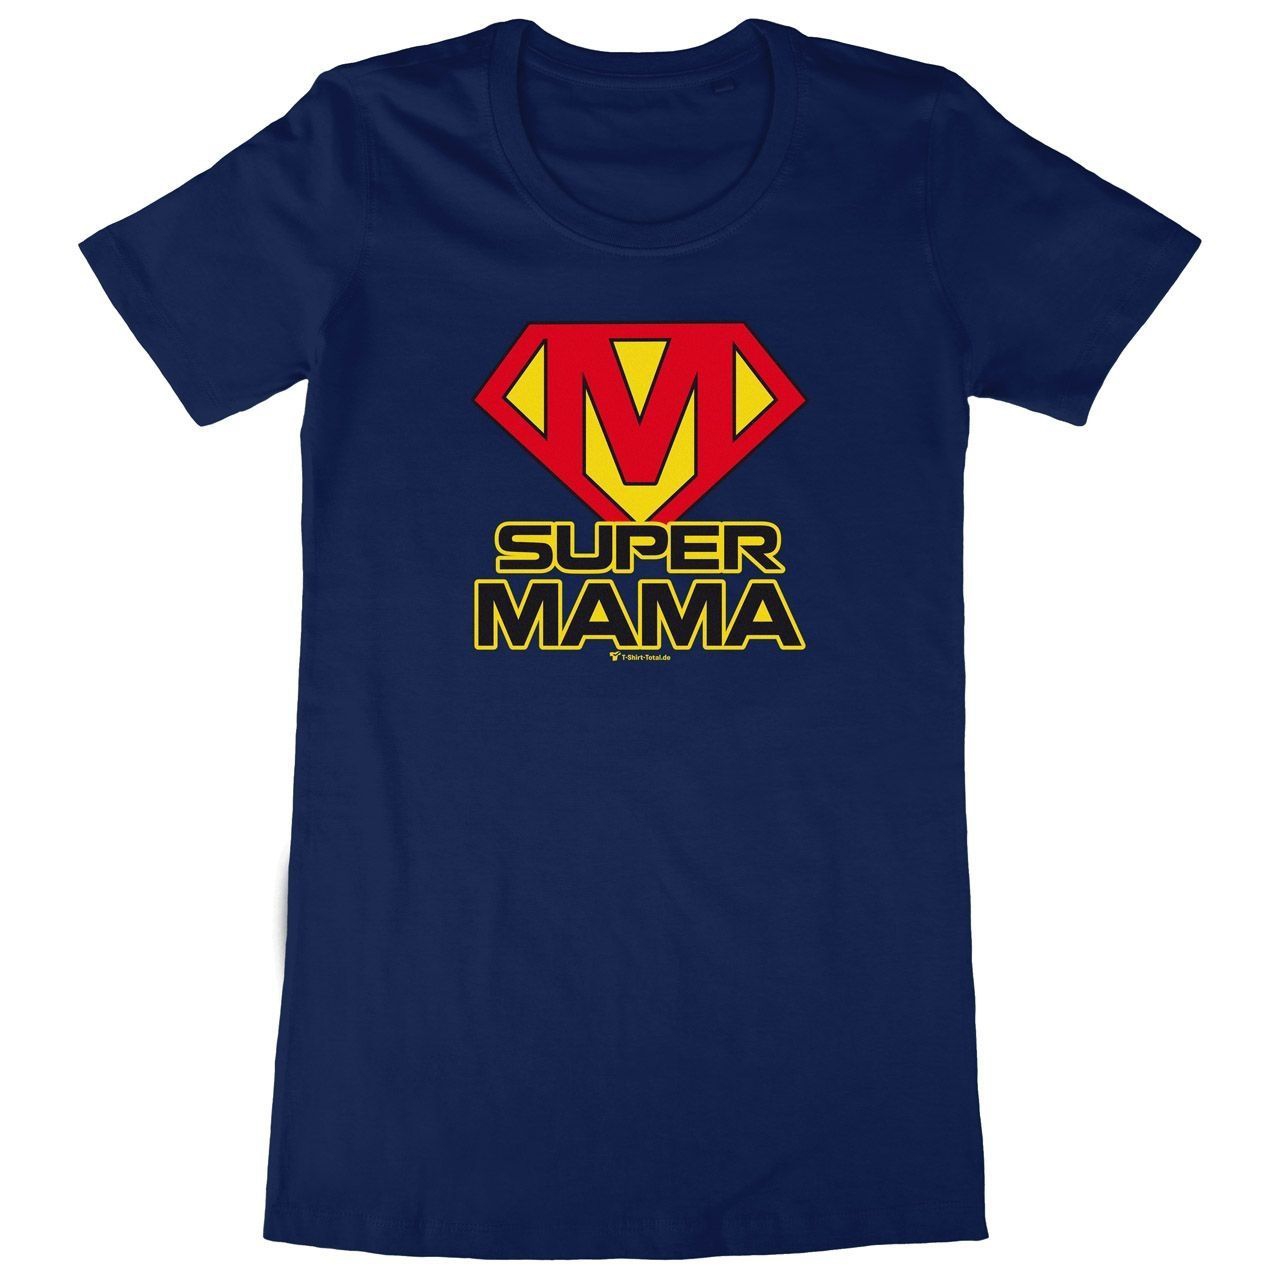 Super Mama Woman Long Shirt navy Small